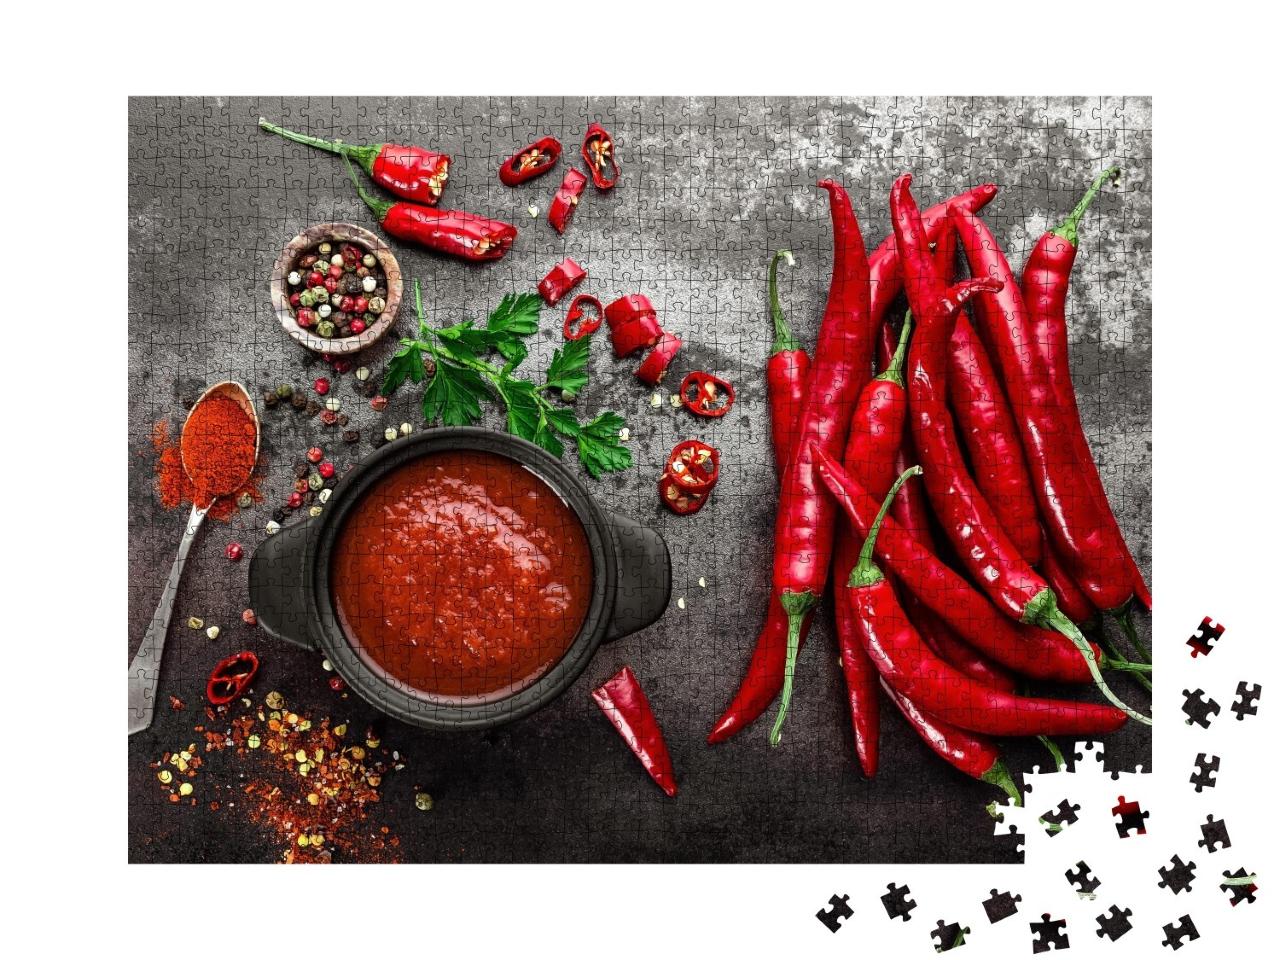 Puzzle de 1000 pièces « Sauce piquante au chili, ketchup »